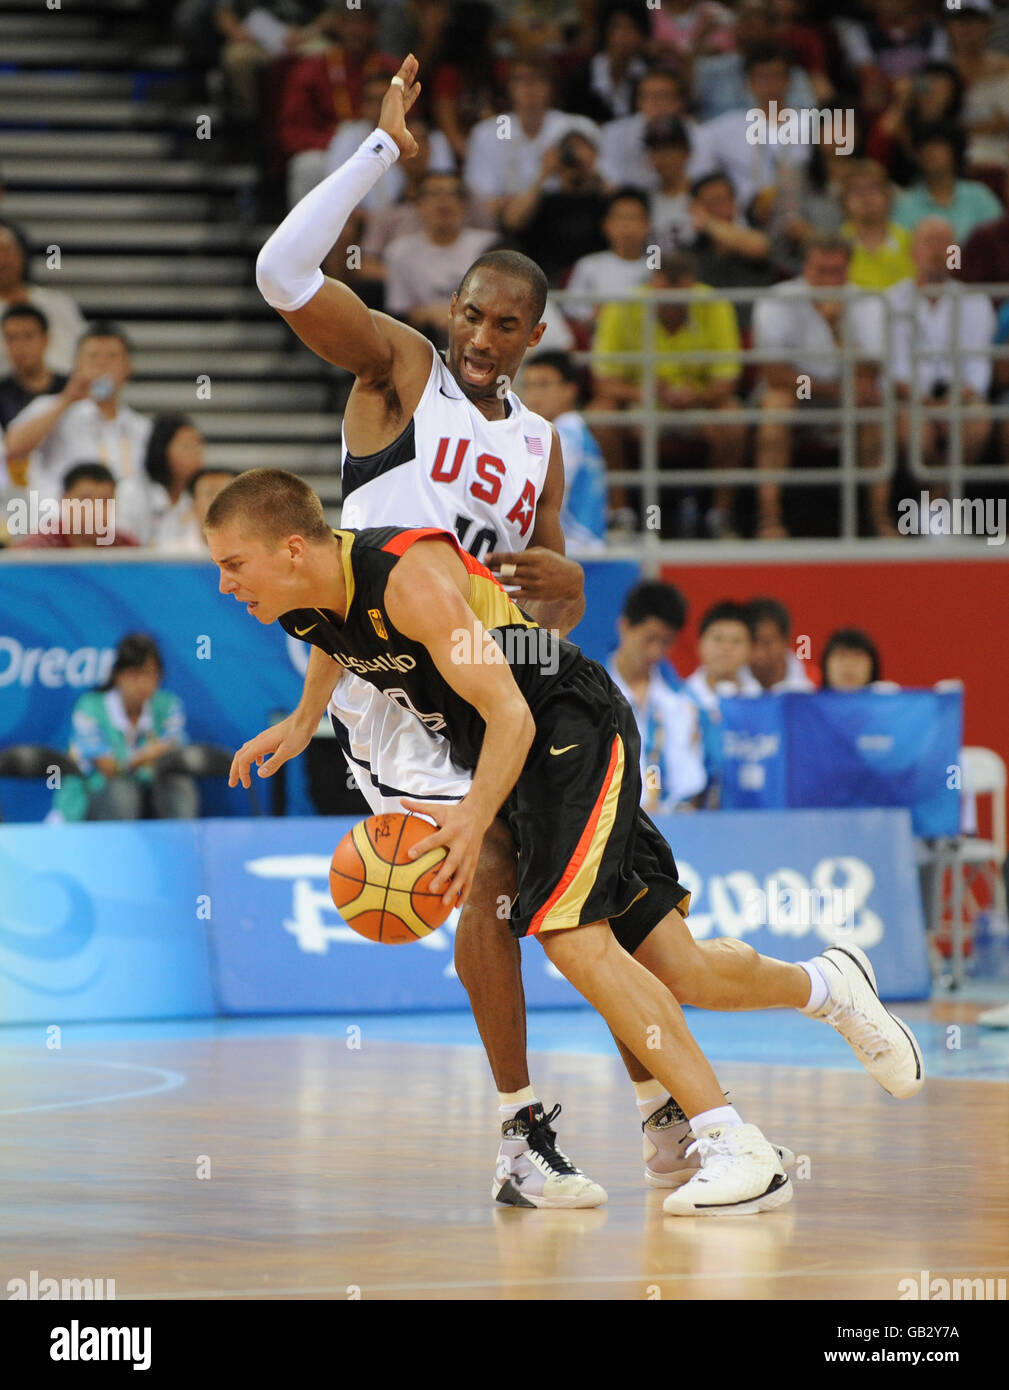 USA Kobe Bryant e Germania Steefen Hamann in azione a. Palestra olimpica di pallacanestro Foto Stock